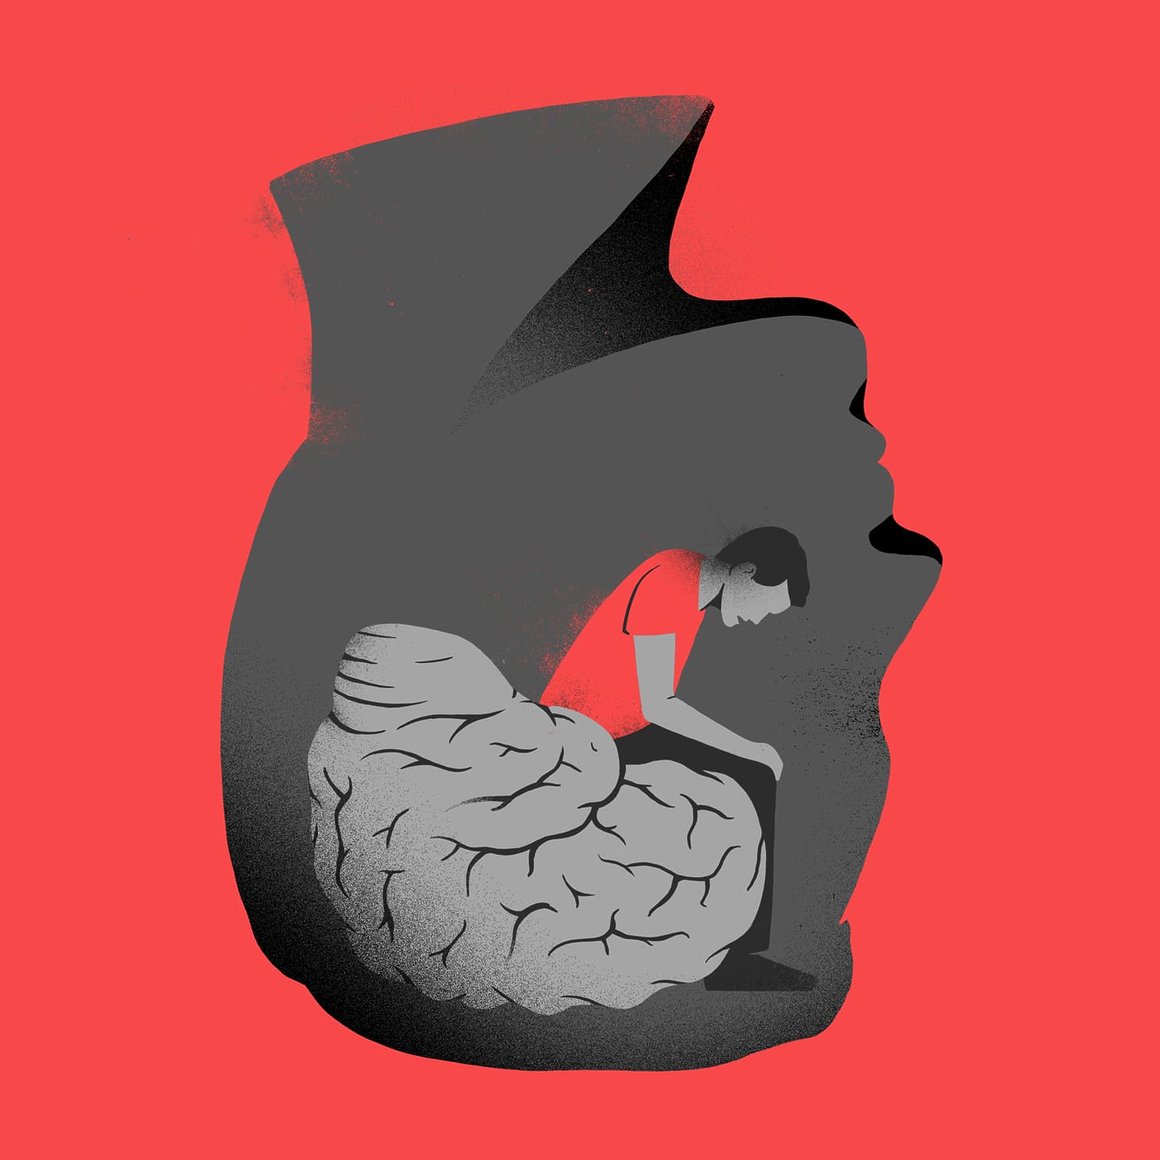 Sur fond rouge, une tête est pochée à l'envers (le cou en haut). A l'intérieur de la tête un homme est assis sur le cerveau.